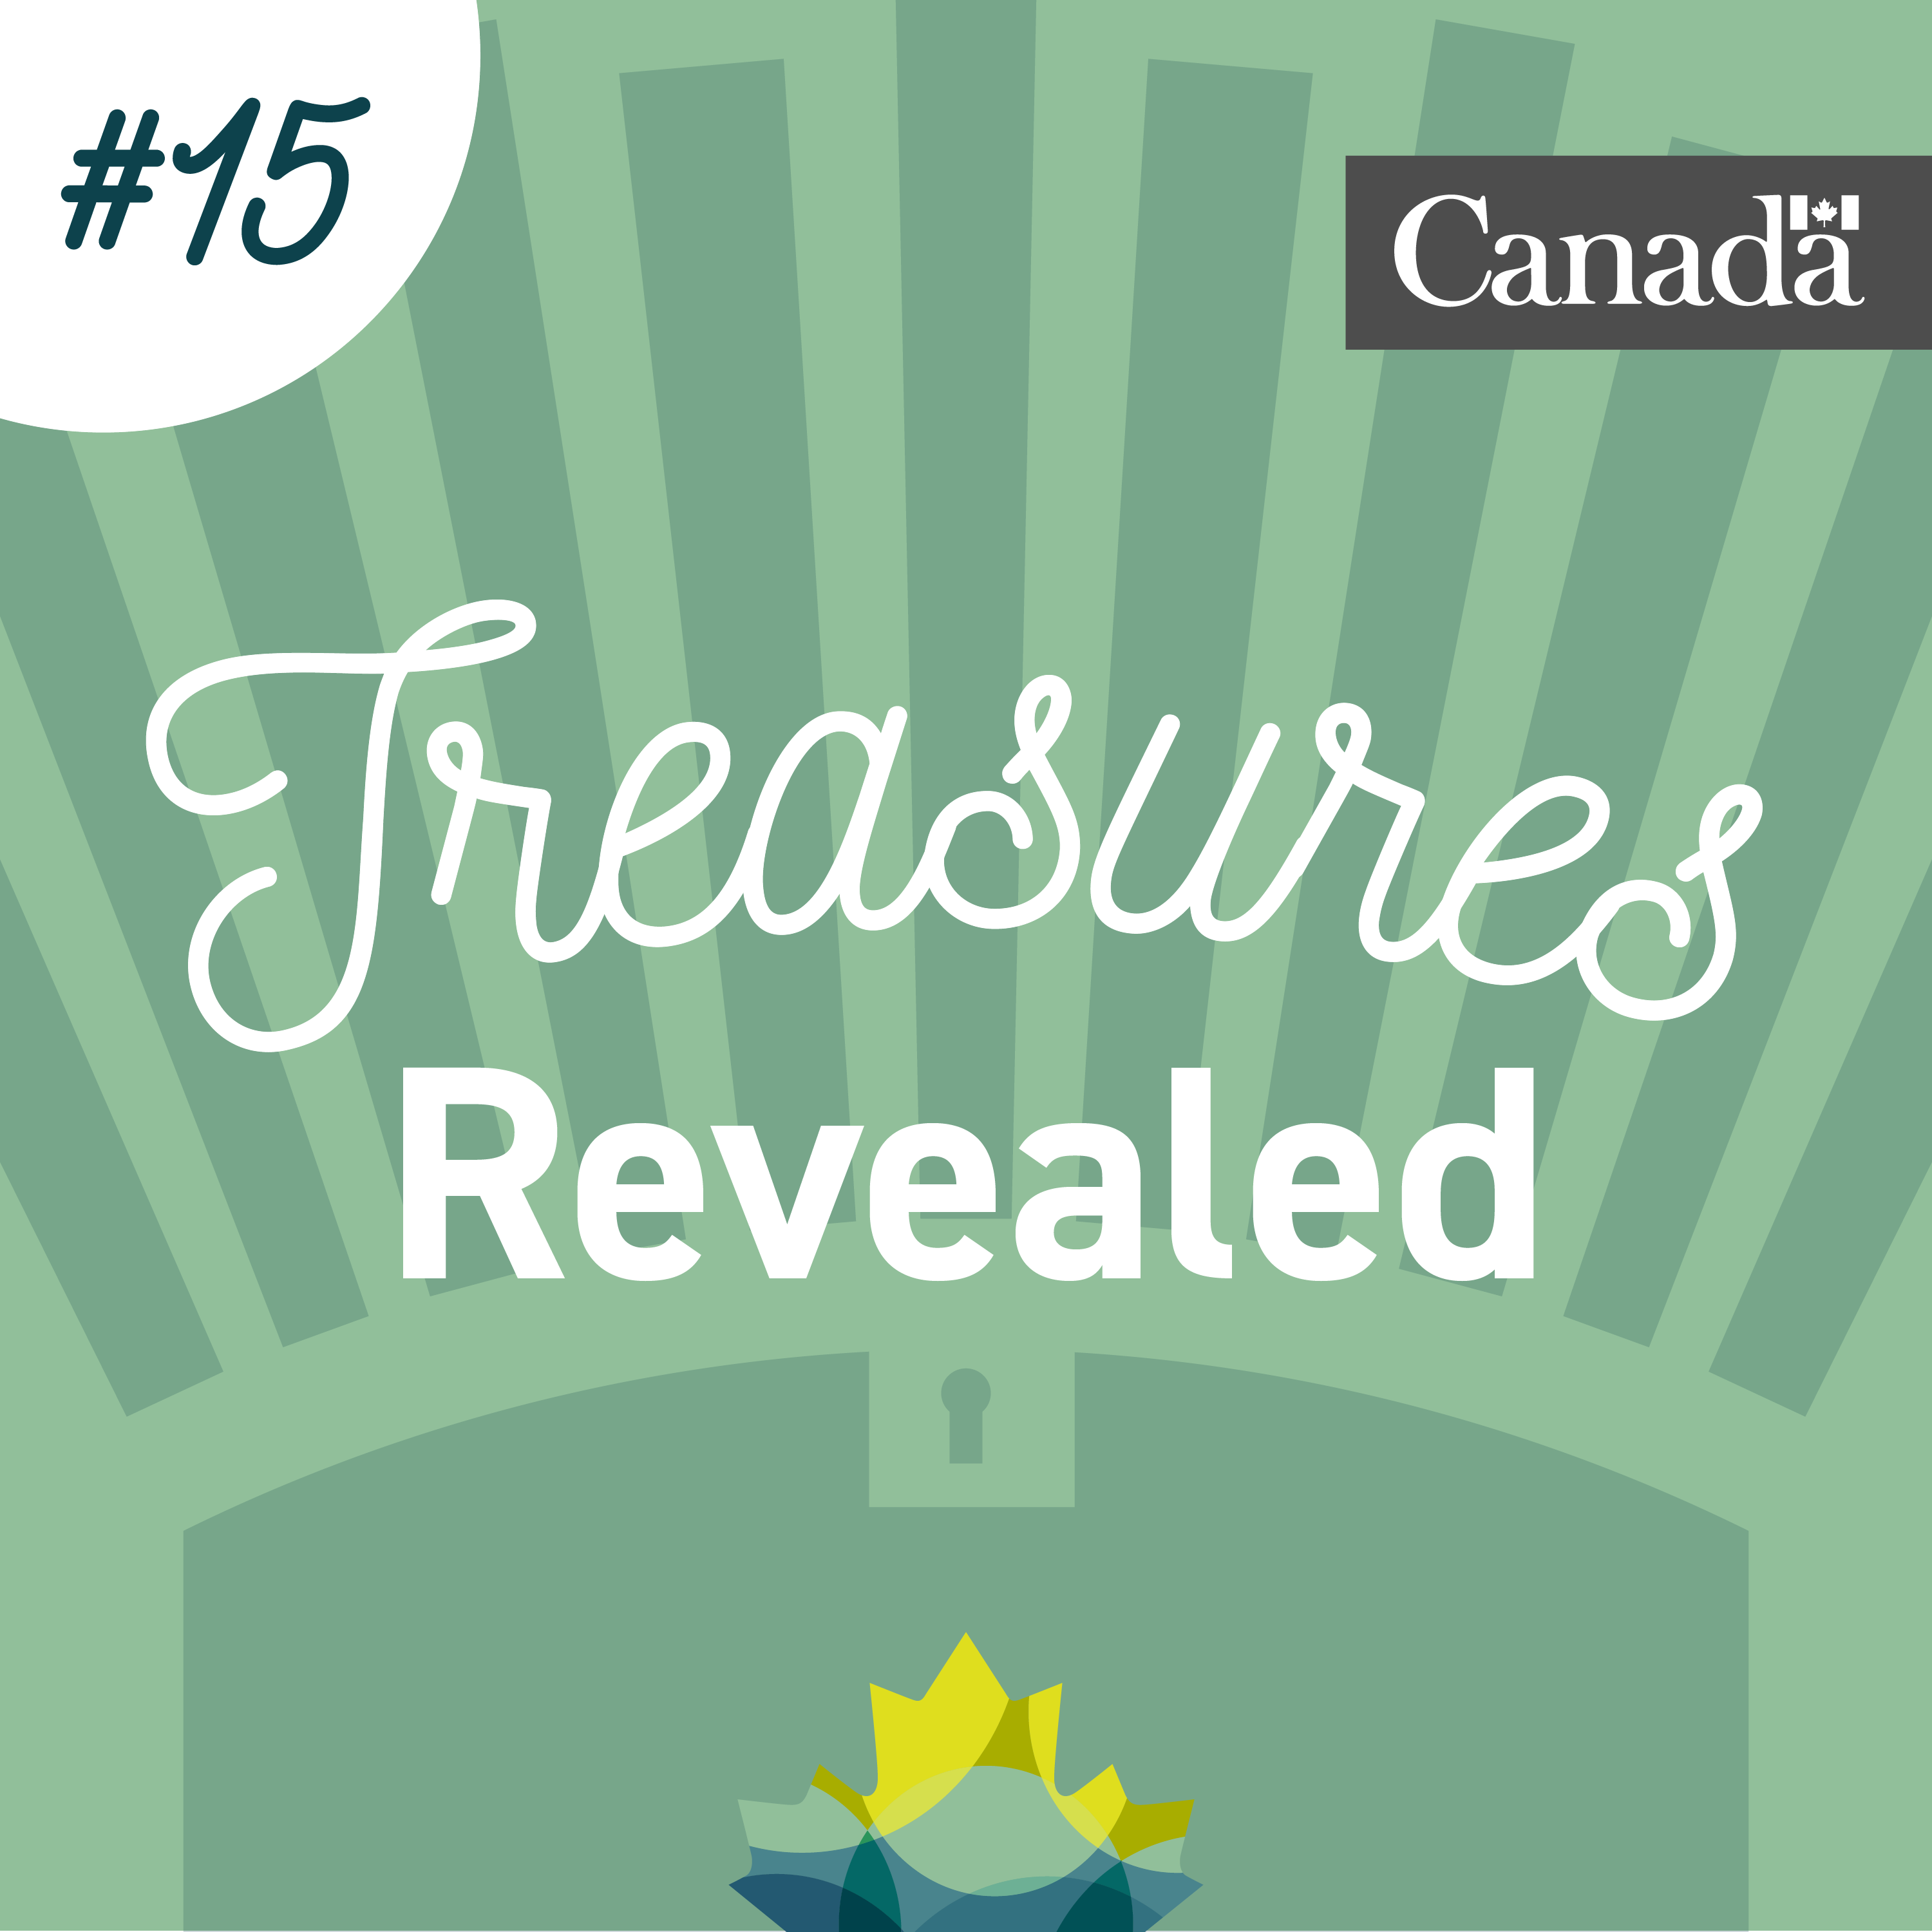 Coffre au trésor stylisé de couleur verte dans lequel se trouve la feuille d’érable de Bibliothèque et Archives Canada. Des rayons sortent du coffre. L’image porte le numéro 15.